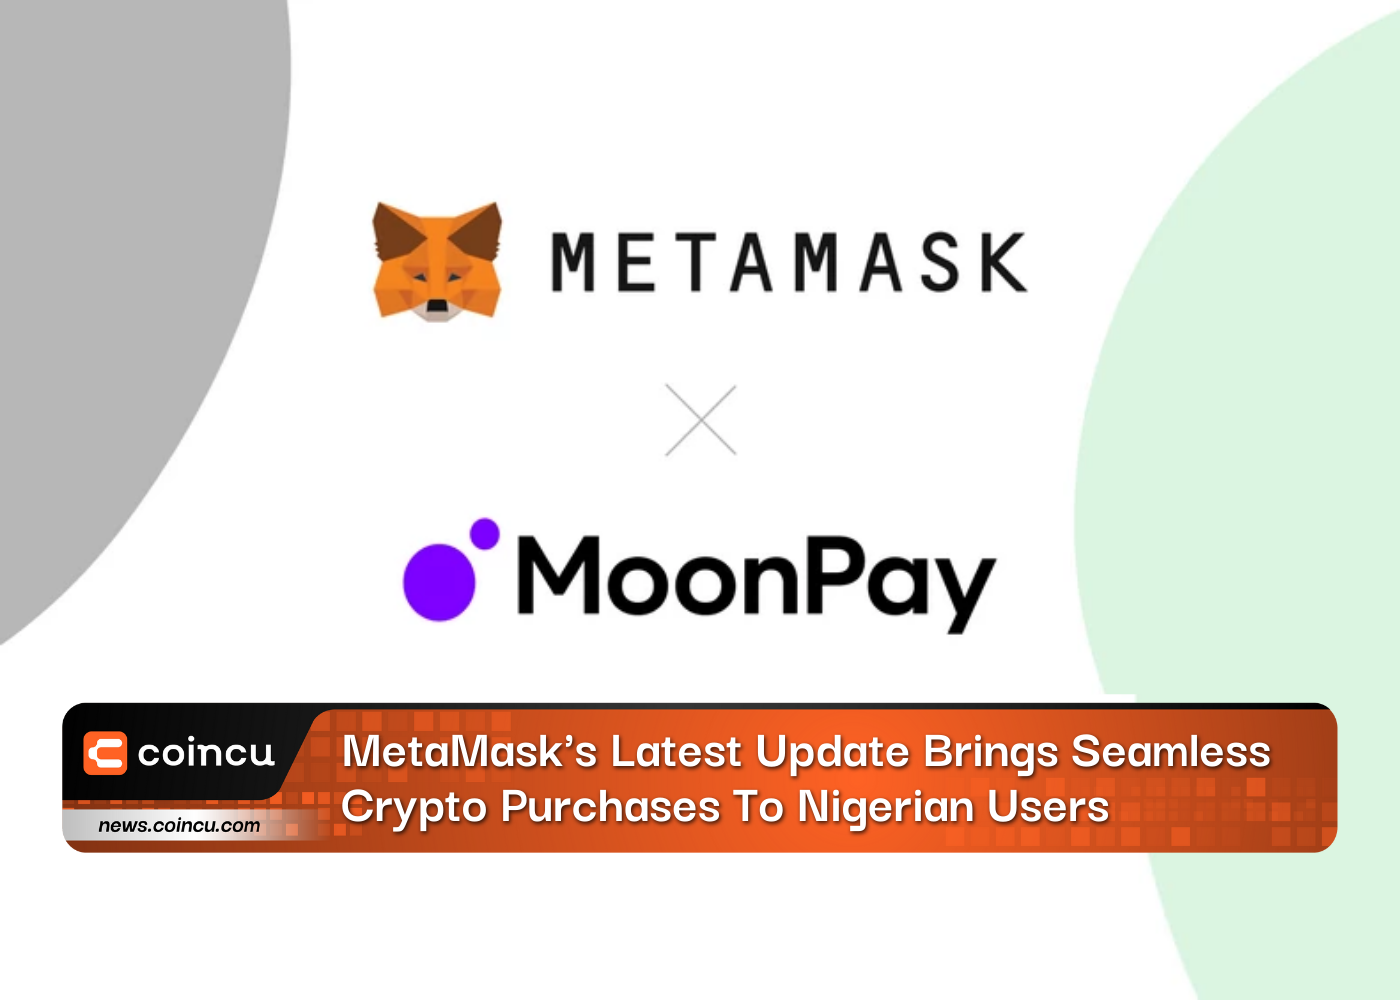 يوفر التحديث الأخير لـ MetaMask عمليات شراء عملات مشفرة سلسة للمستخدمين النيجيريين